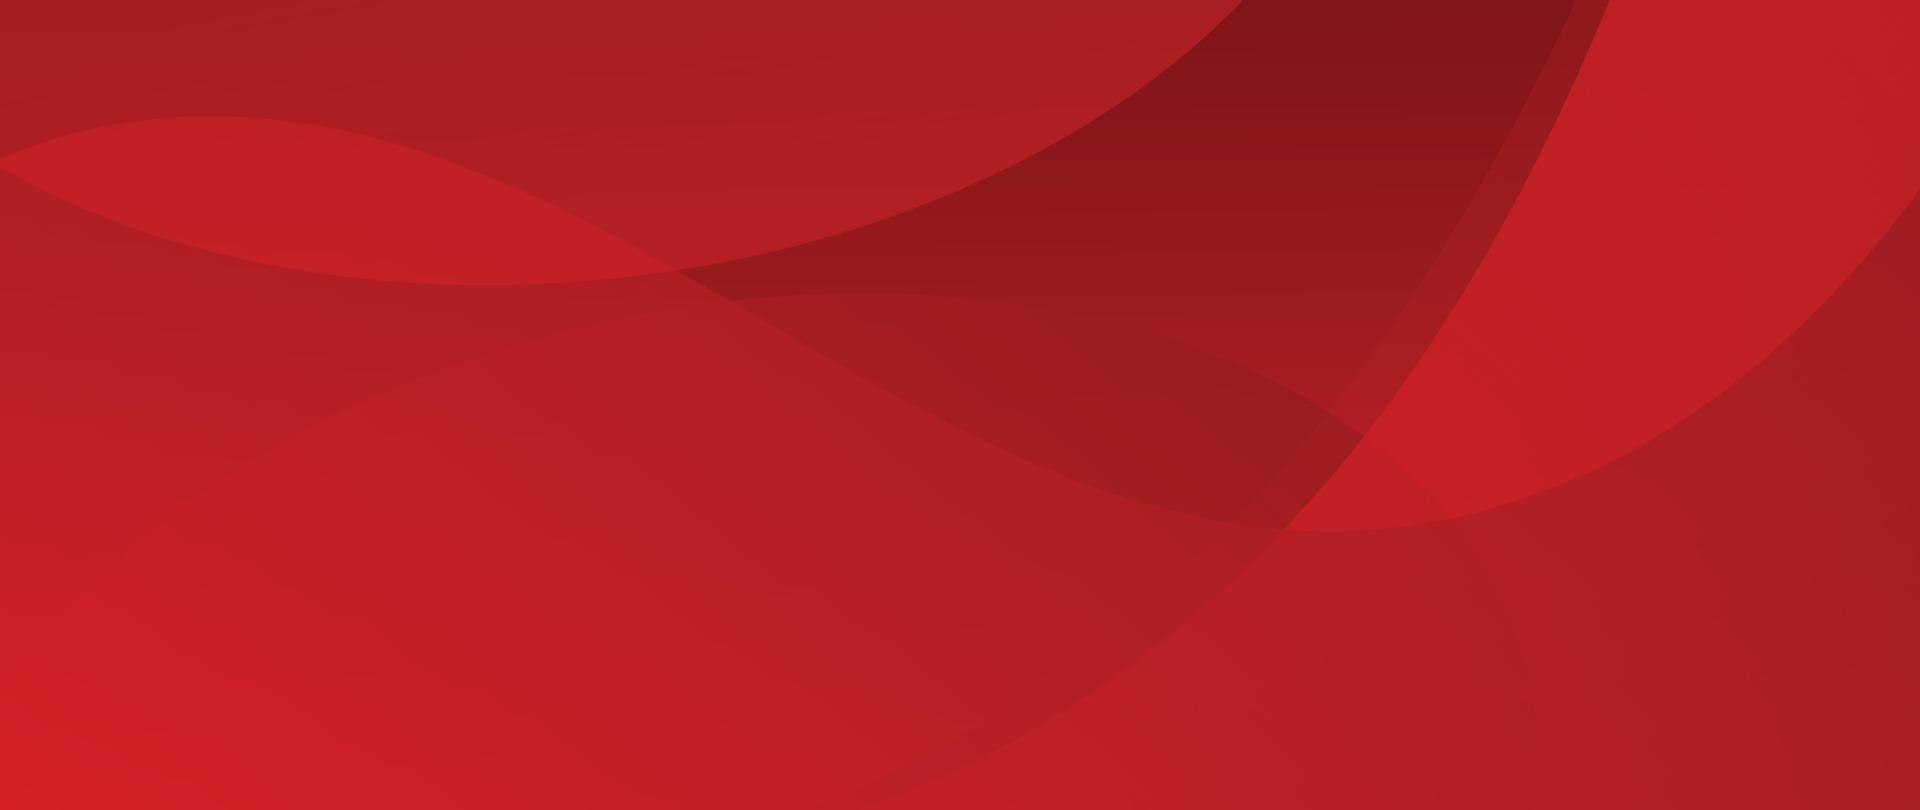 vetor de fundo gradiente vermelho abstrato. design de papel de parede de estilo moderno com formas orgânicas, linhas, ondas, curva. ilustração para o ano novo chinês, anúncios, banner de venda, design de negócios e embalagens.